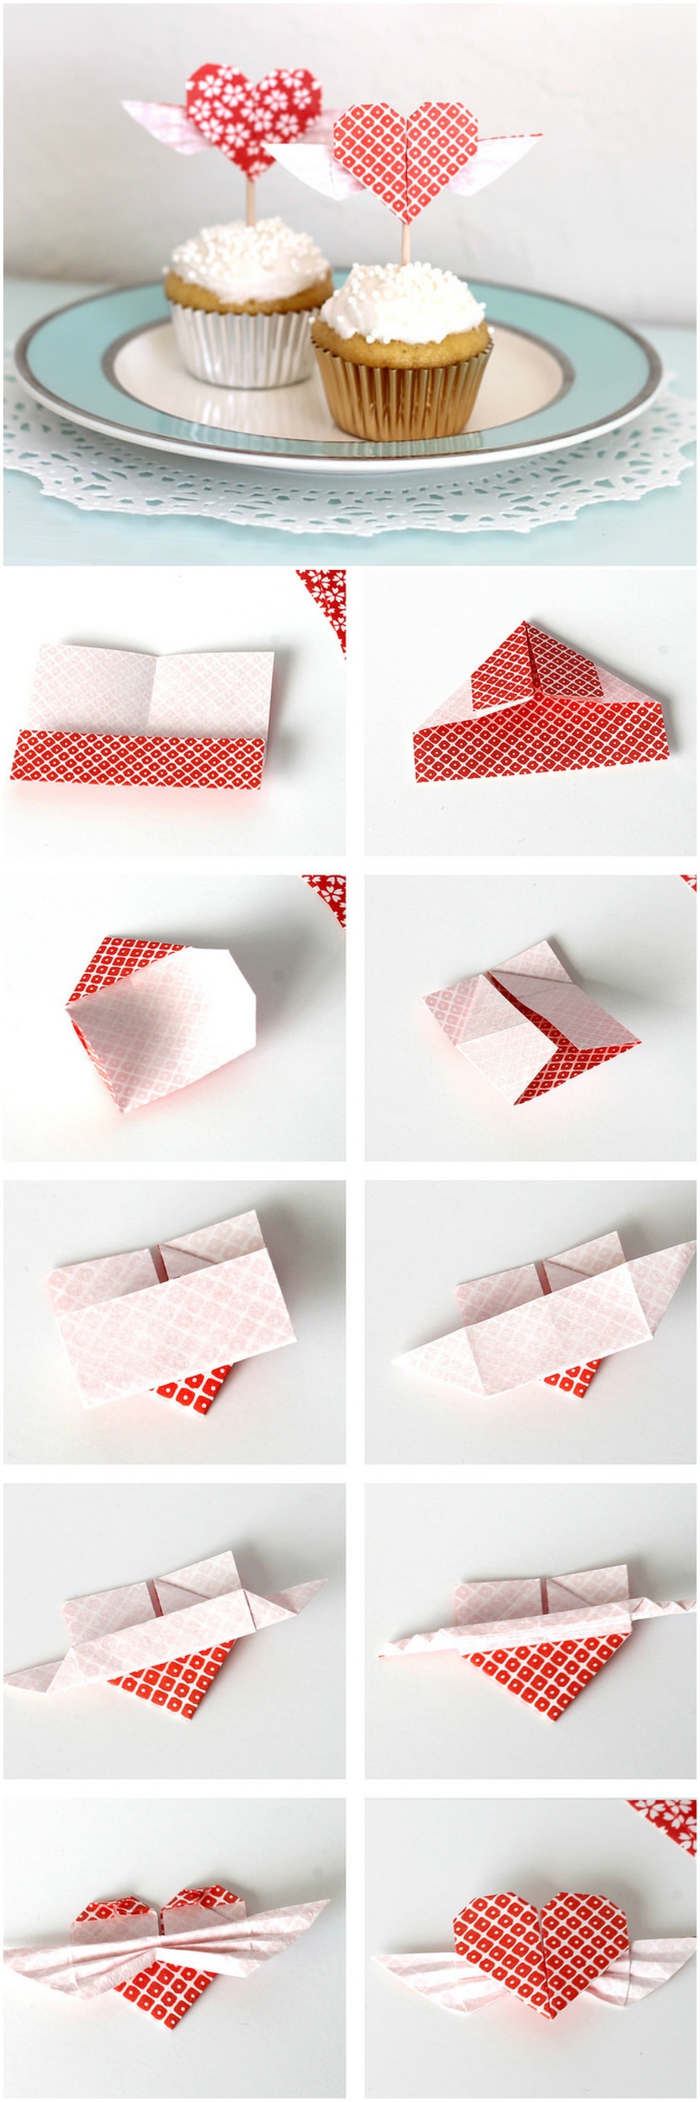 un bricolage origami facile pour la saint-valentin, comment faire des cake toppers en forme de coeurs origami